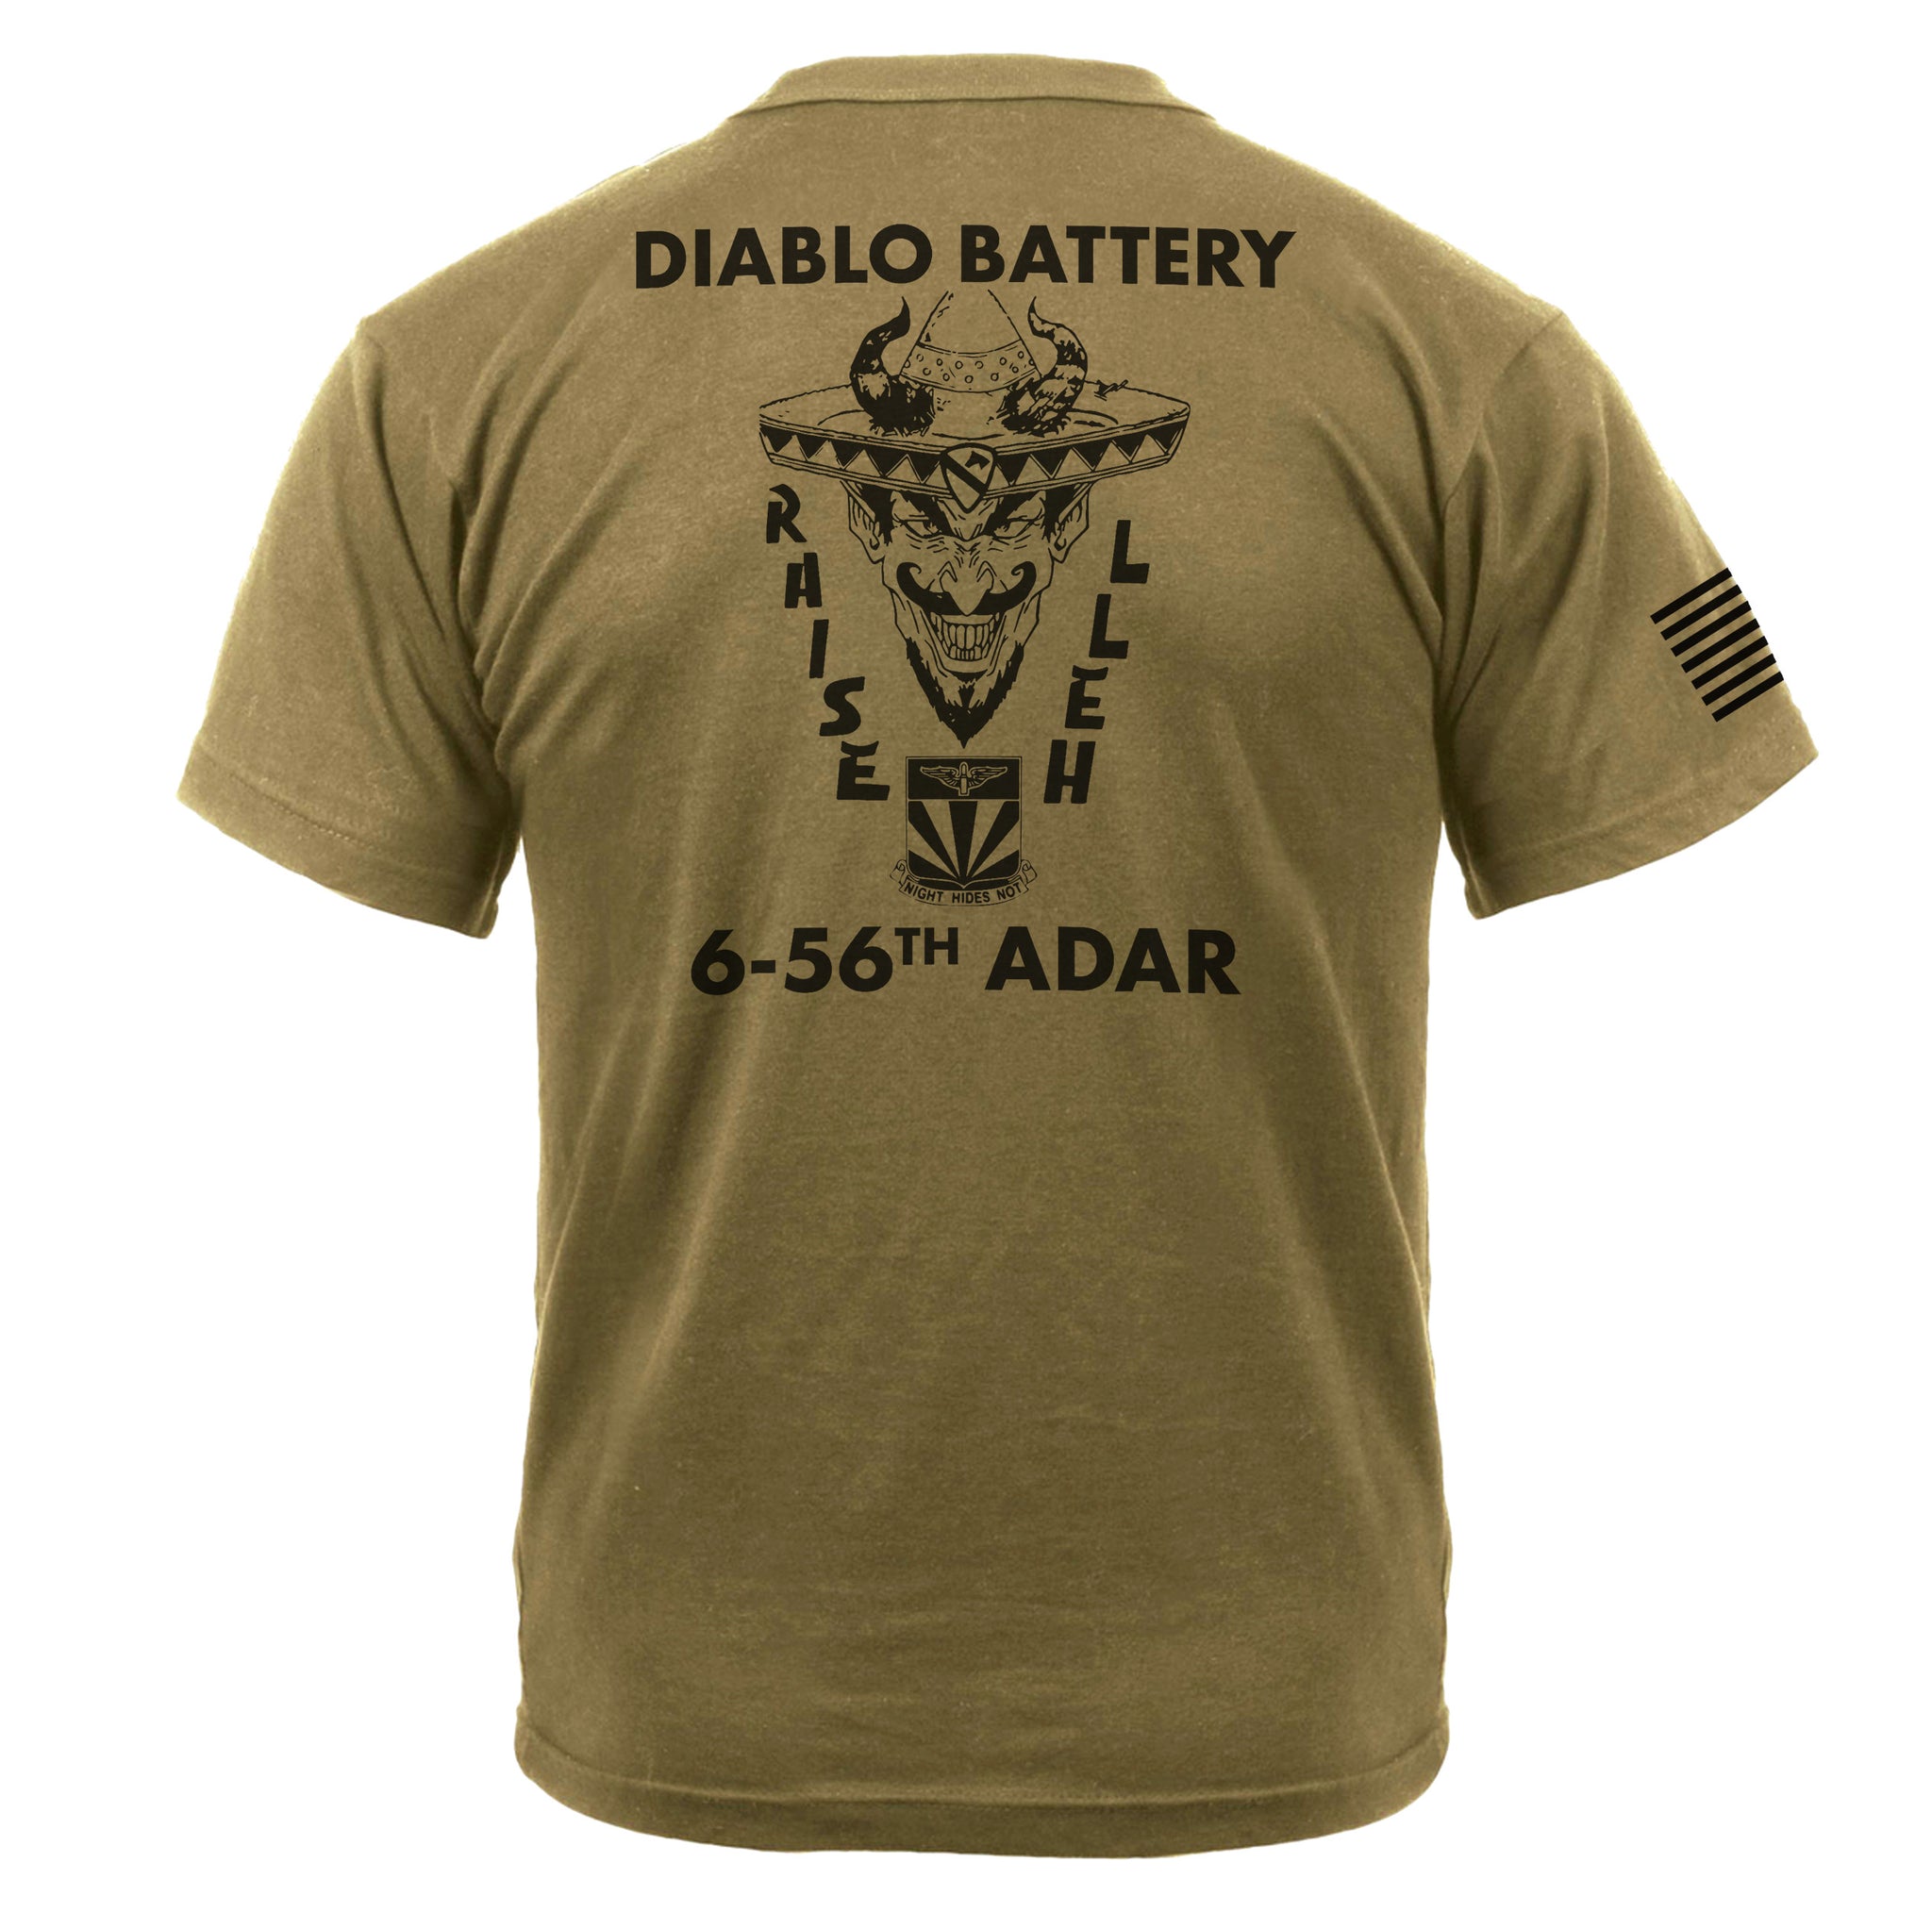 6-56 Diablo Battery Tee